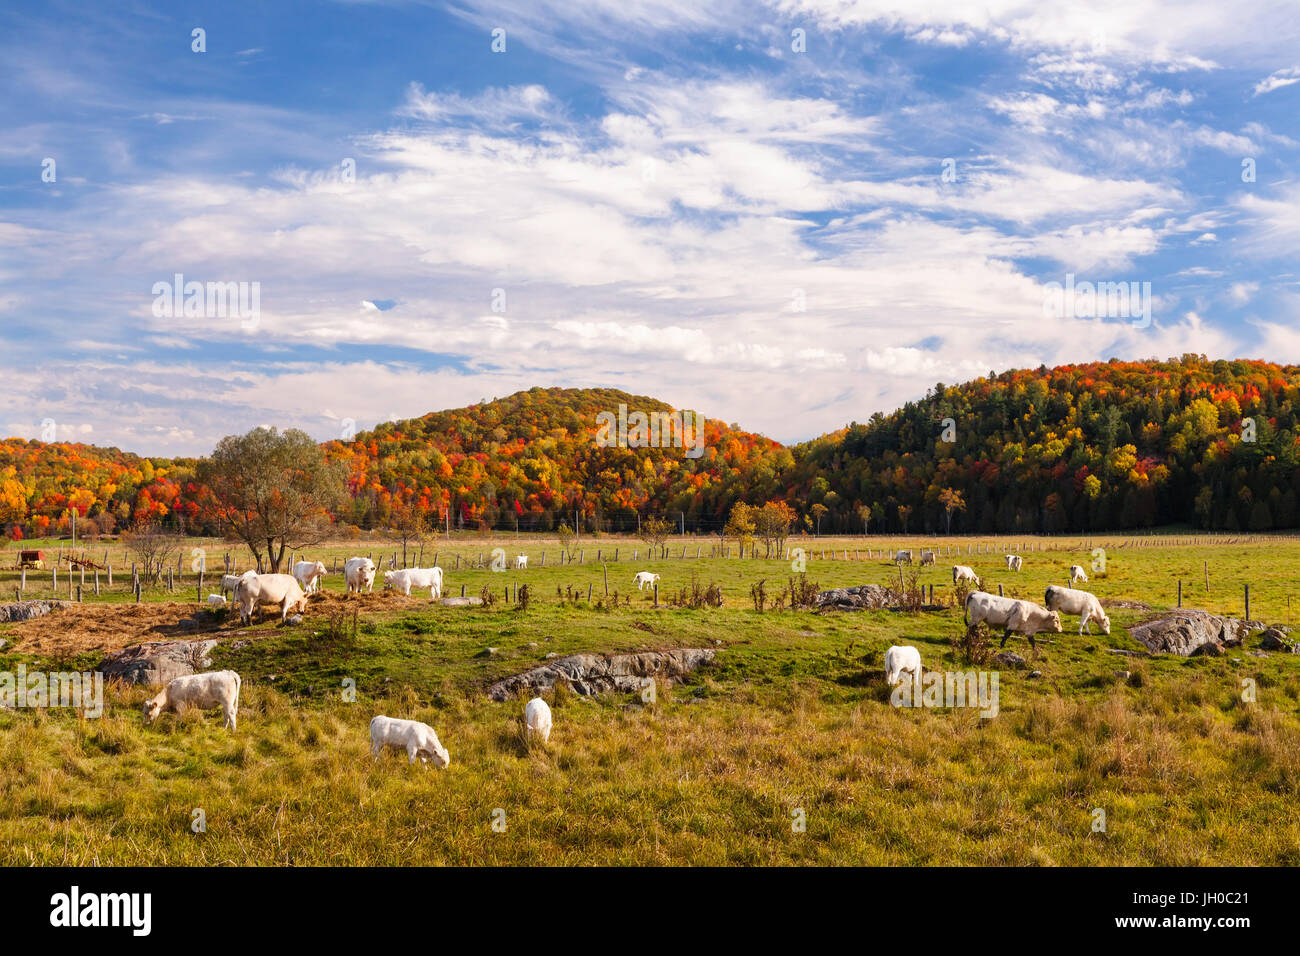 Un troupeau de bovins charolais (Bos taurus taurus) paître dans un champ au cours de l'automne dans l'Ange-Gardien, Ouaouais, Québec, Canada. Banque D'Images